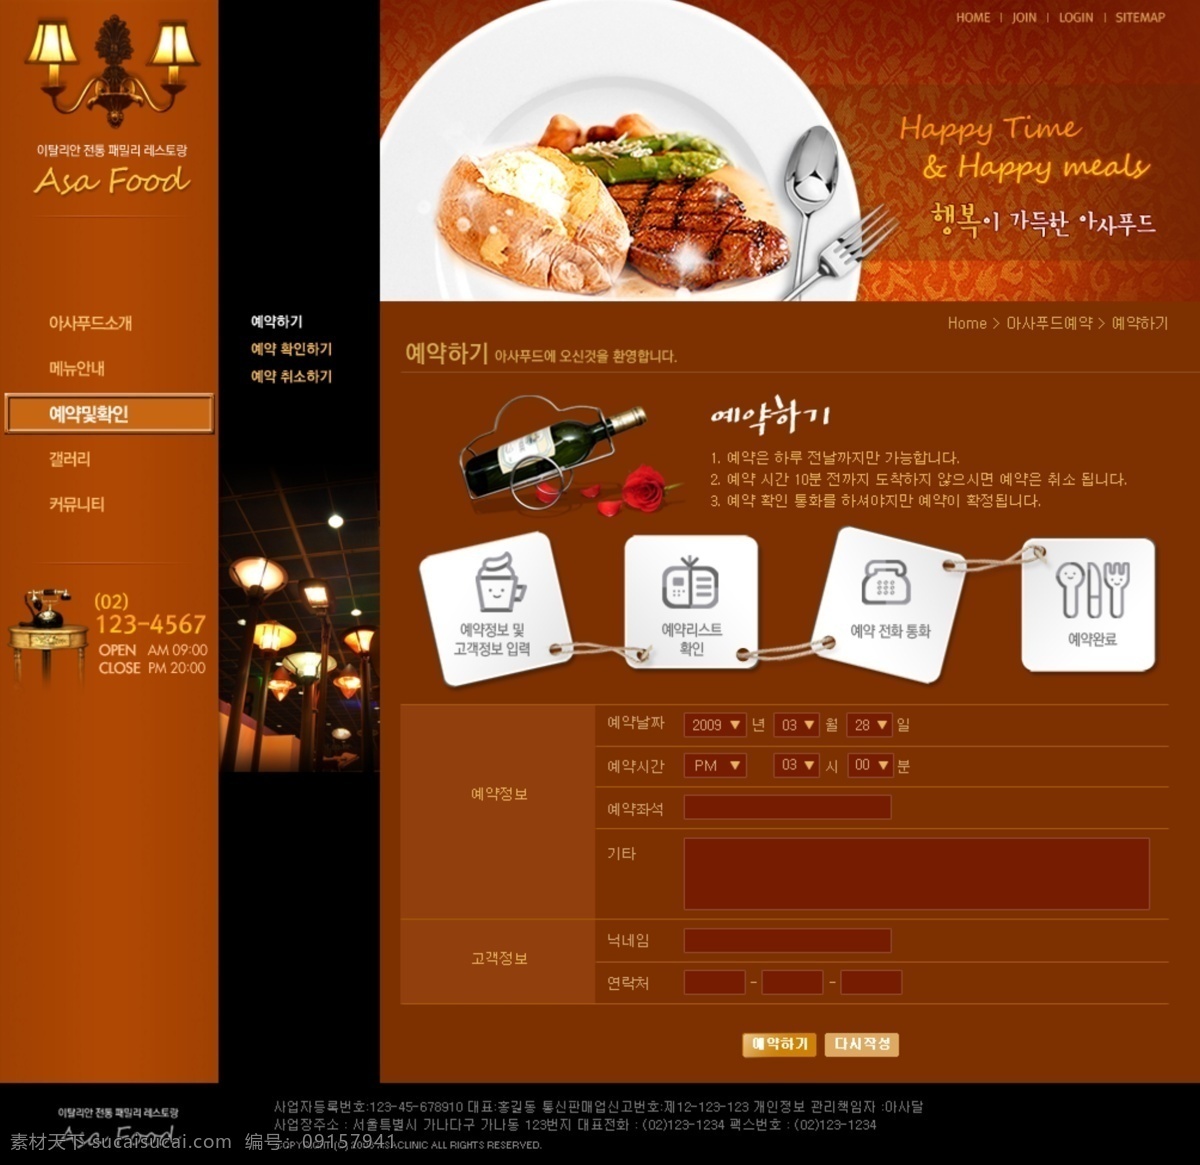 餐饮 界面设计 美食 网页模板 网站设计 西餐 源文件 餐饮美食 模板下载 类 韩文模板 网页素材 网页界面设计